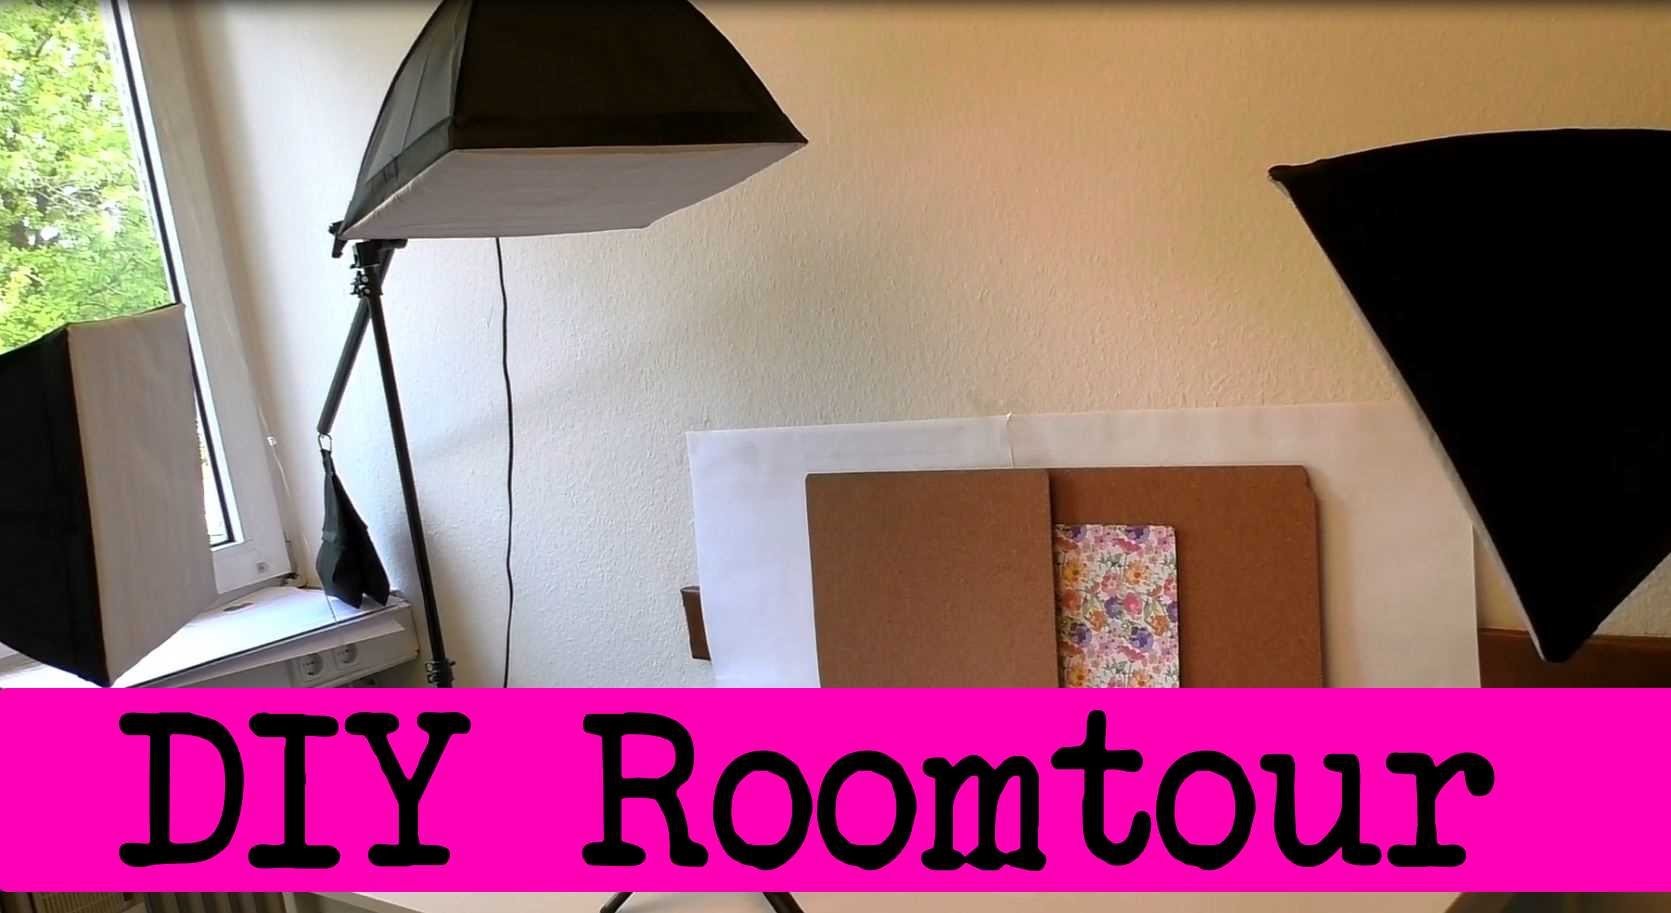 Roomtour deutsch - DIY Inspiration Studio mit Eva &Kathi - "Besucht" uns in unserem Bastelzimmer!